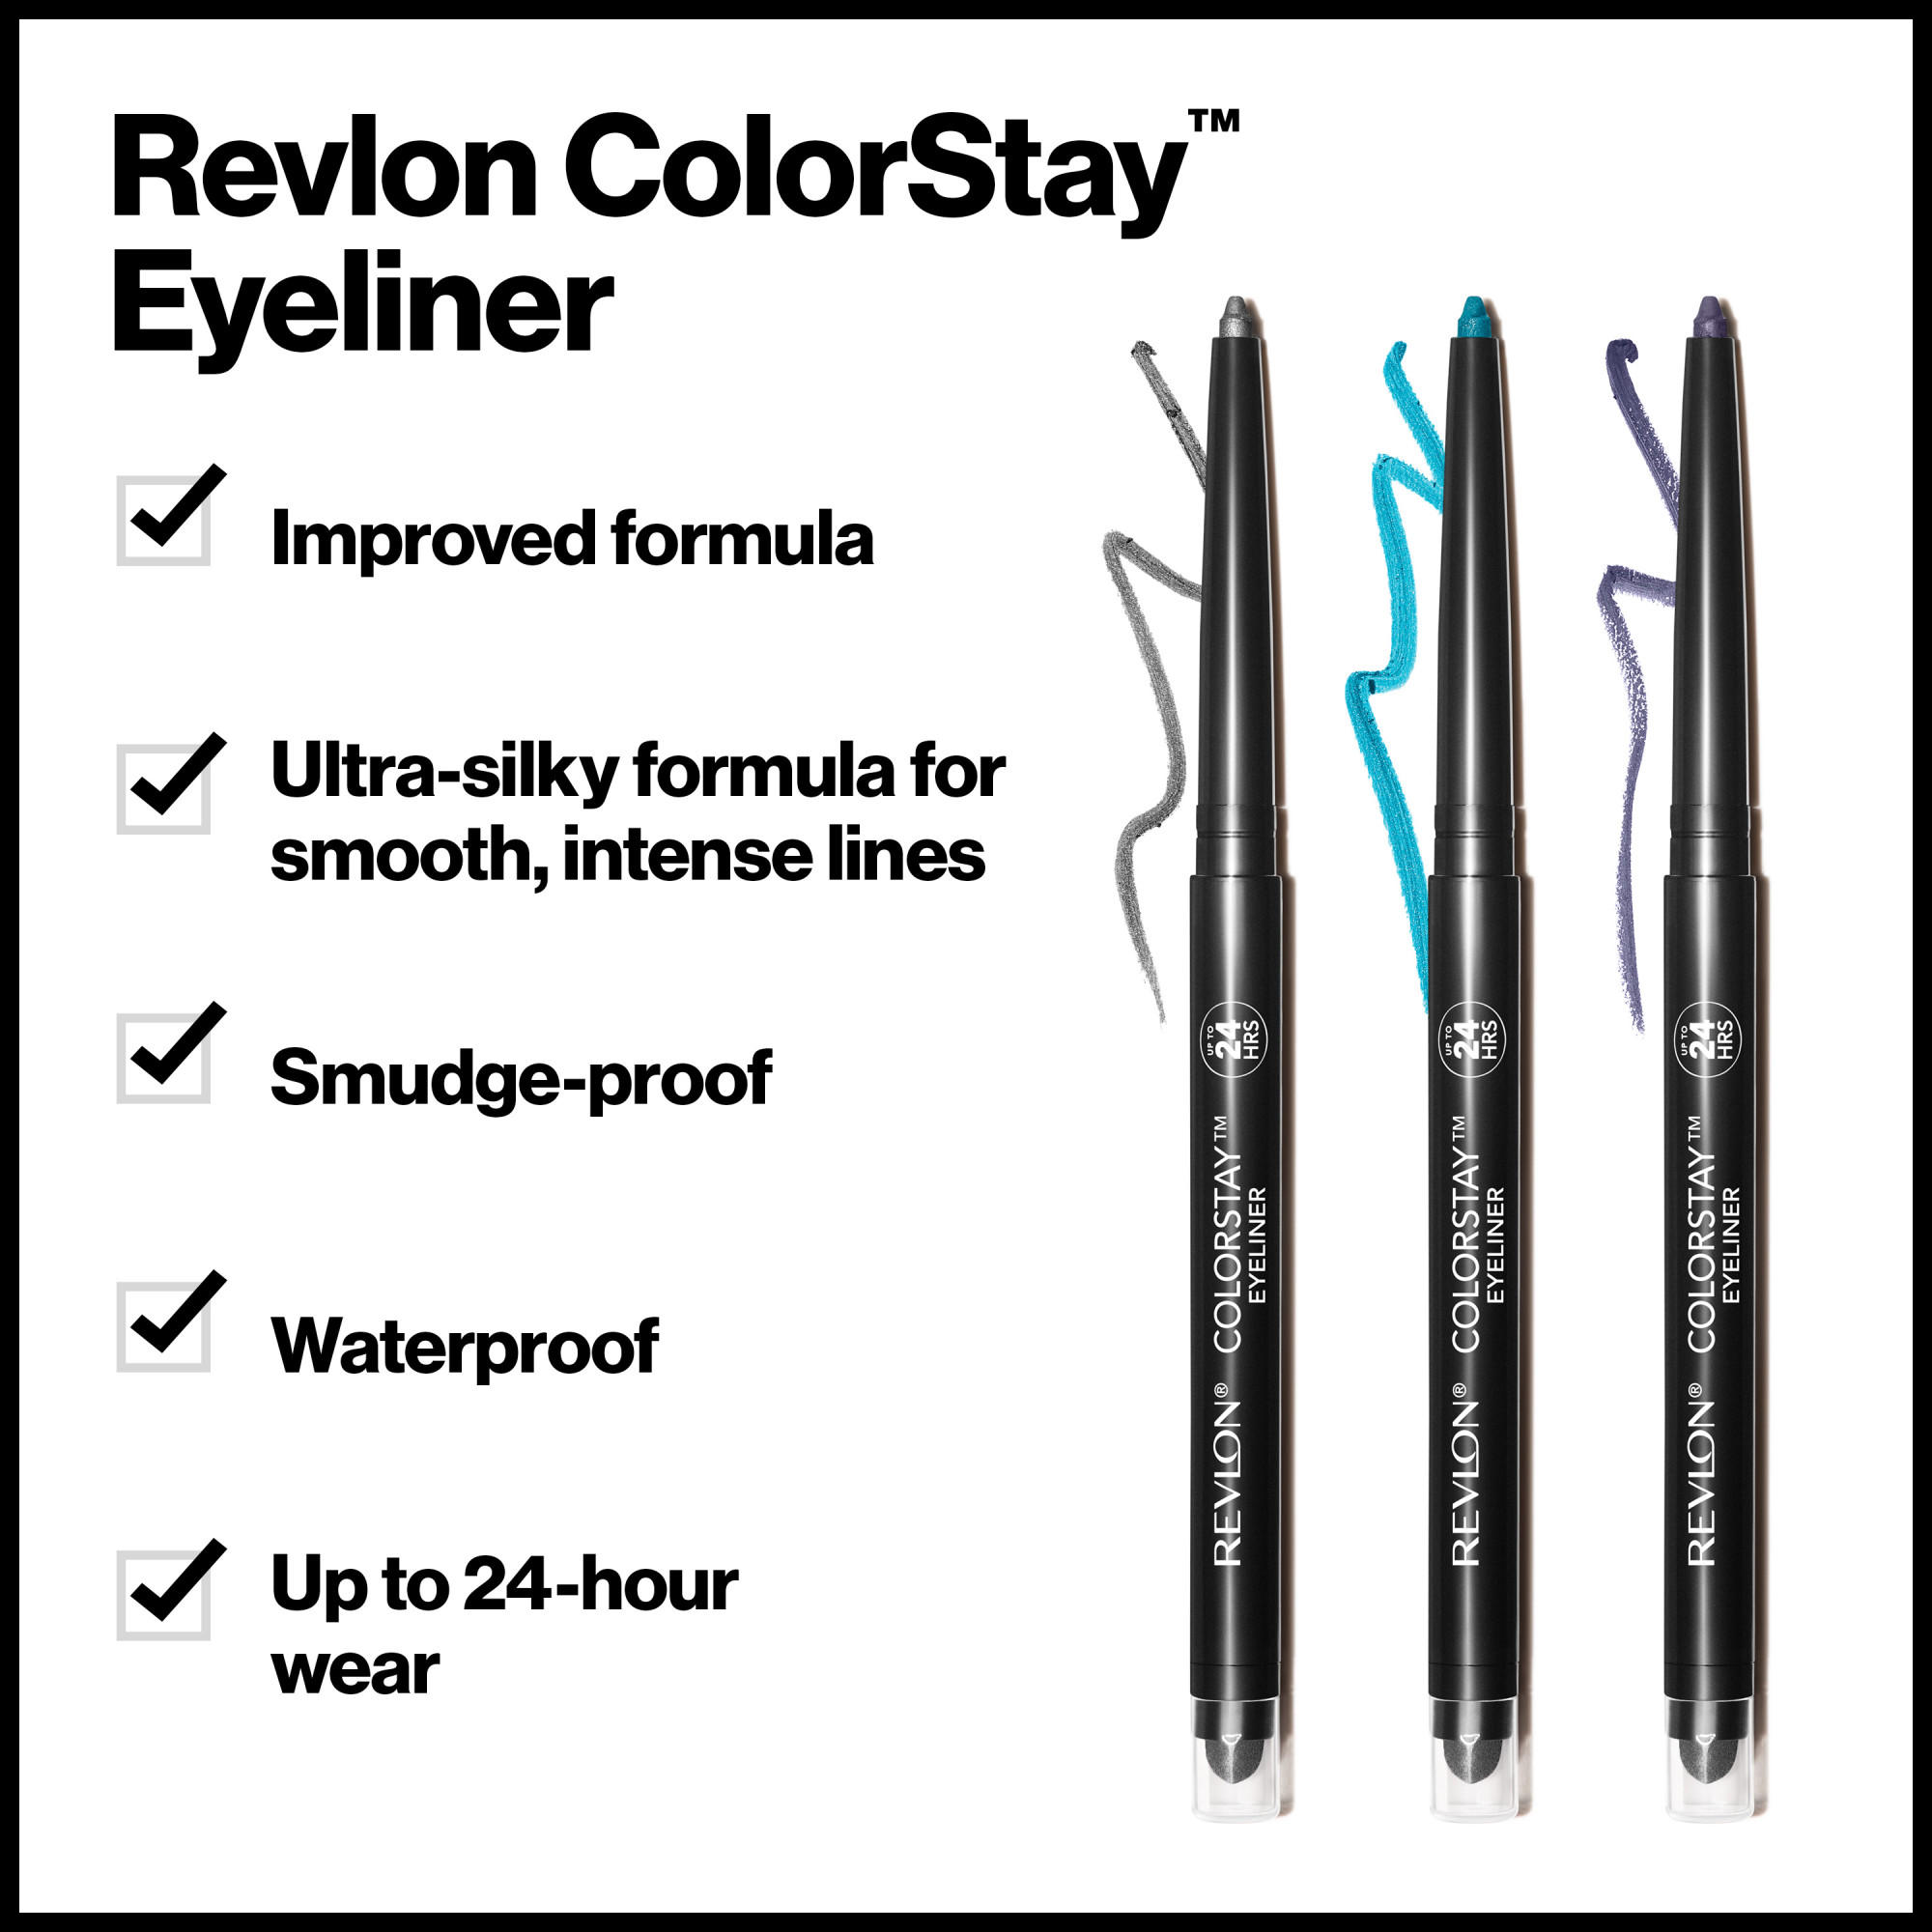 Revlon ColorStay Waterproof Eyeliner Pencil, 24HR Wear, Built-in Sharpener, 210 Teal, 0.01 oz - image 5 of 9